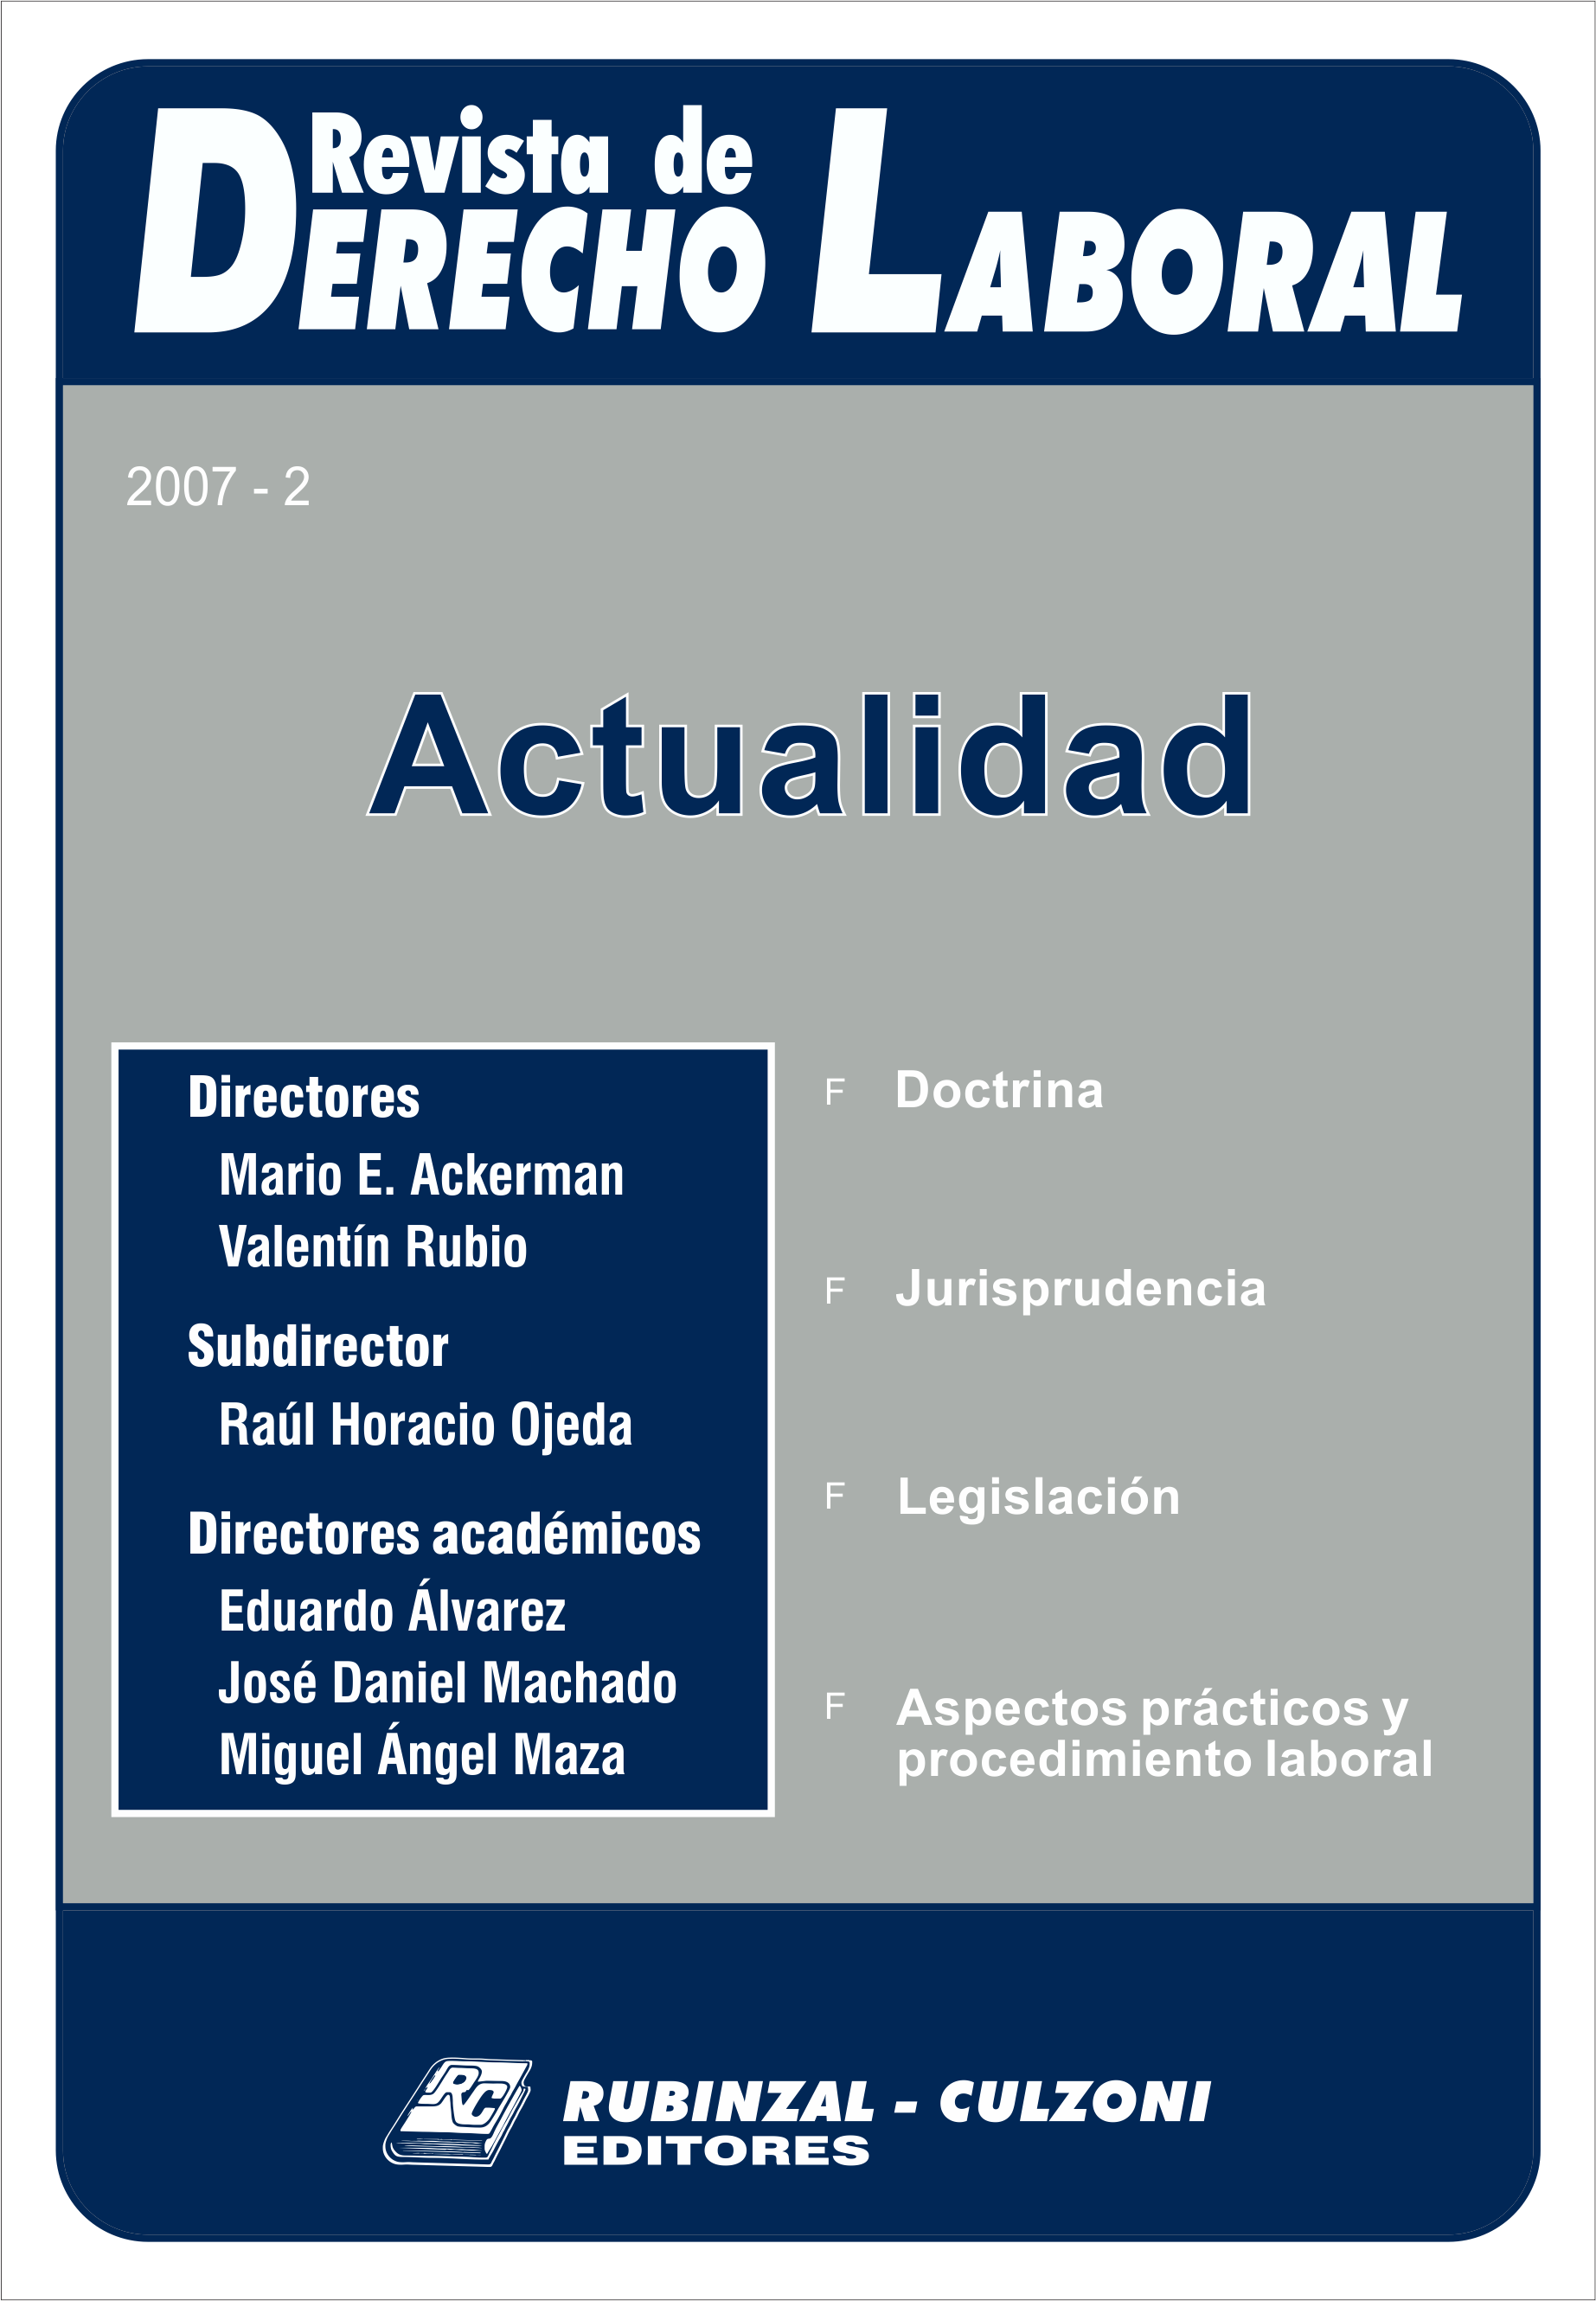 Revista de Derecho Laboral Actualidad - Año 2007 - 2.